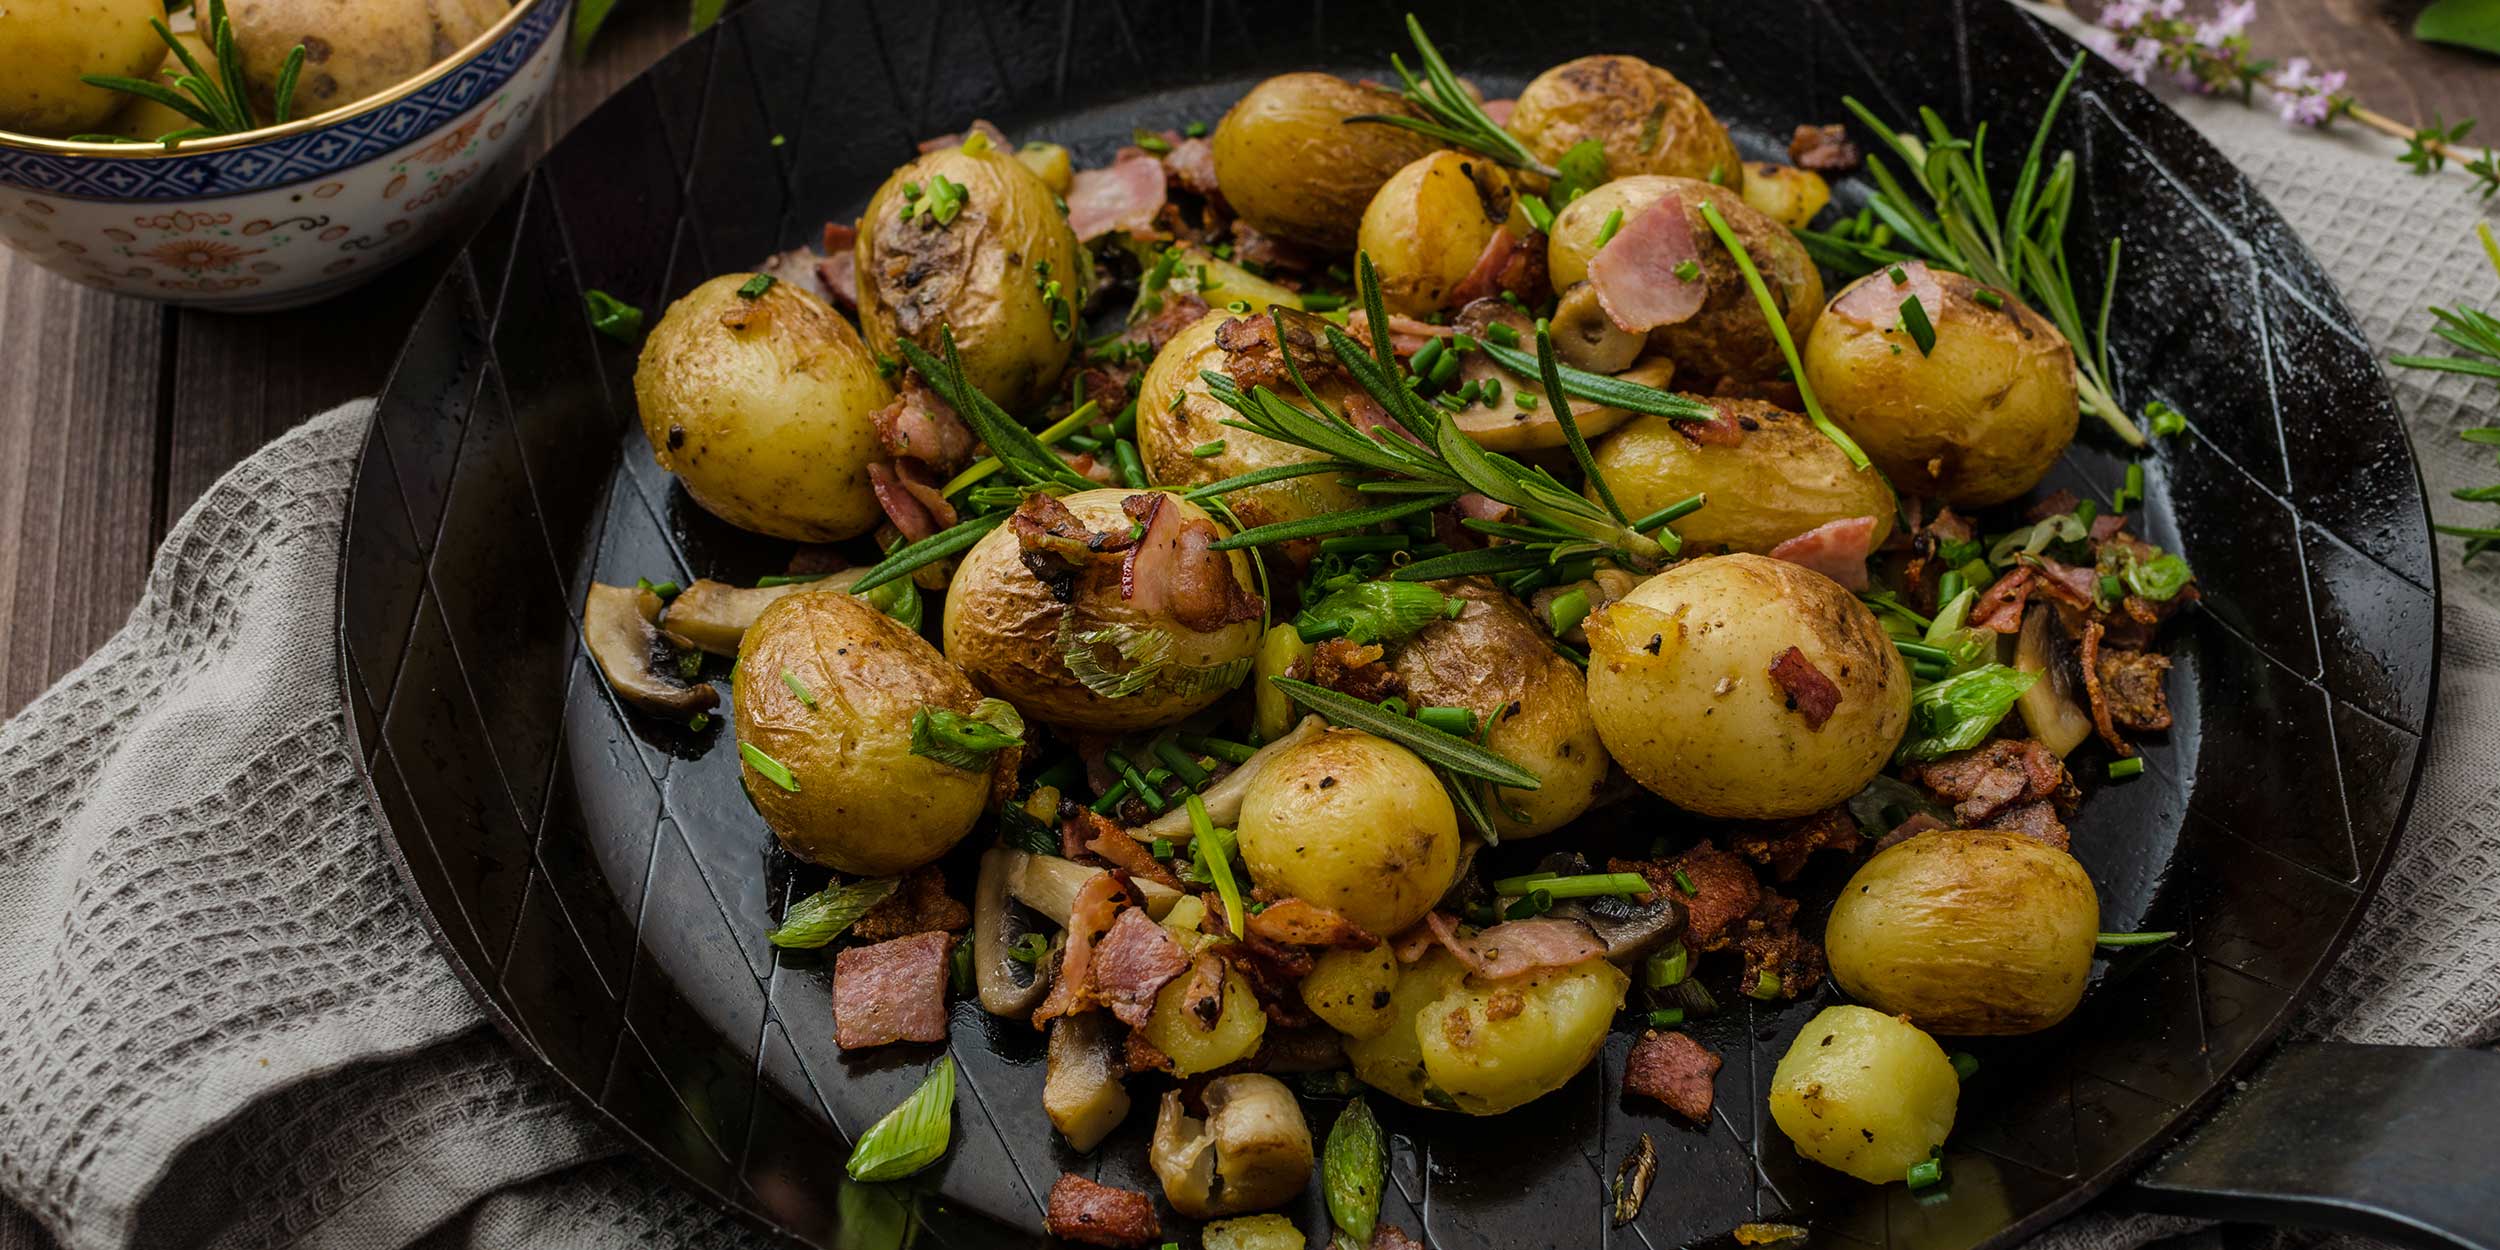 Как приготовить картофель: способы и рецепты